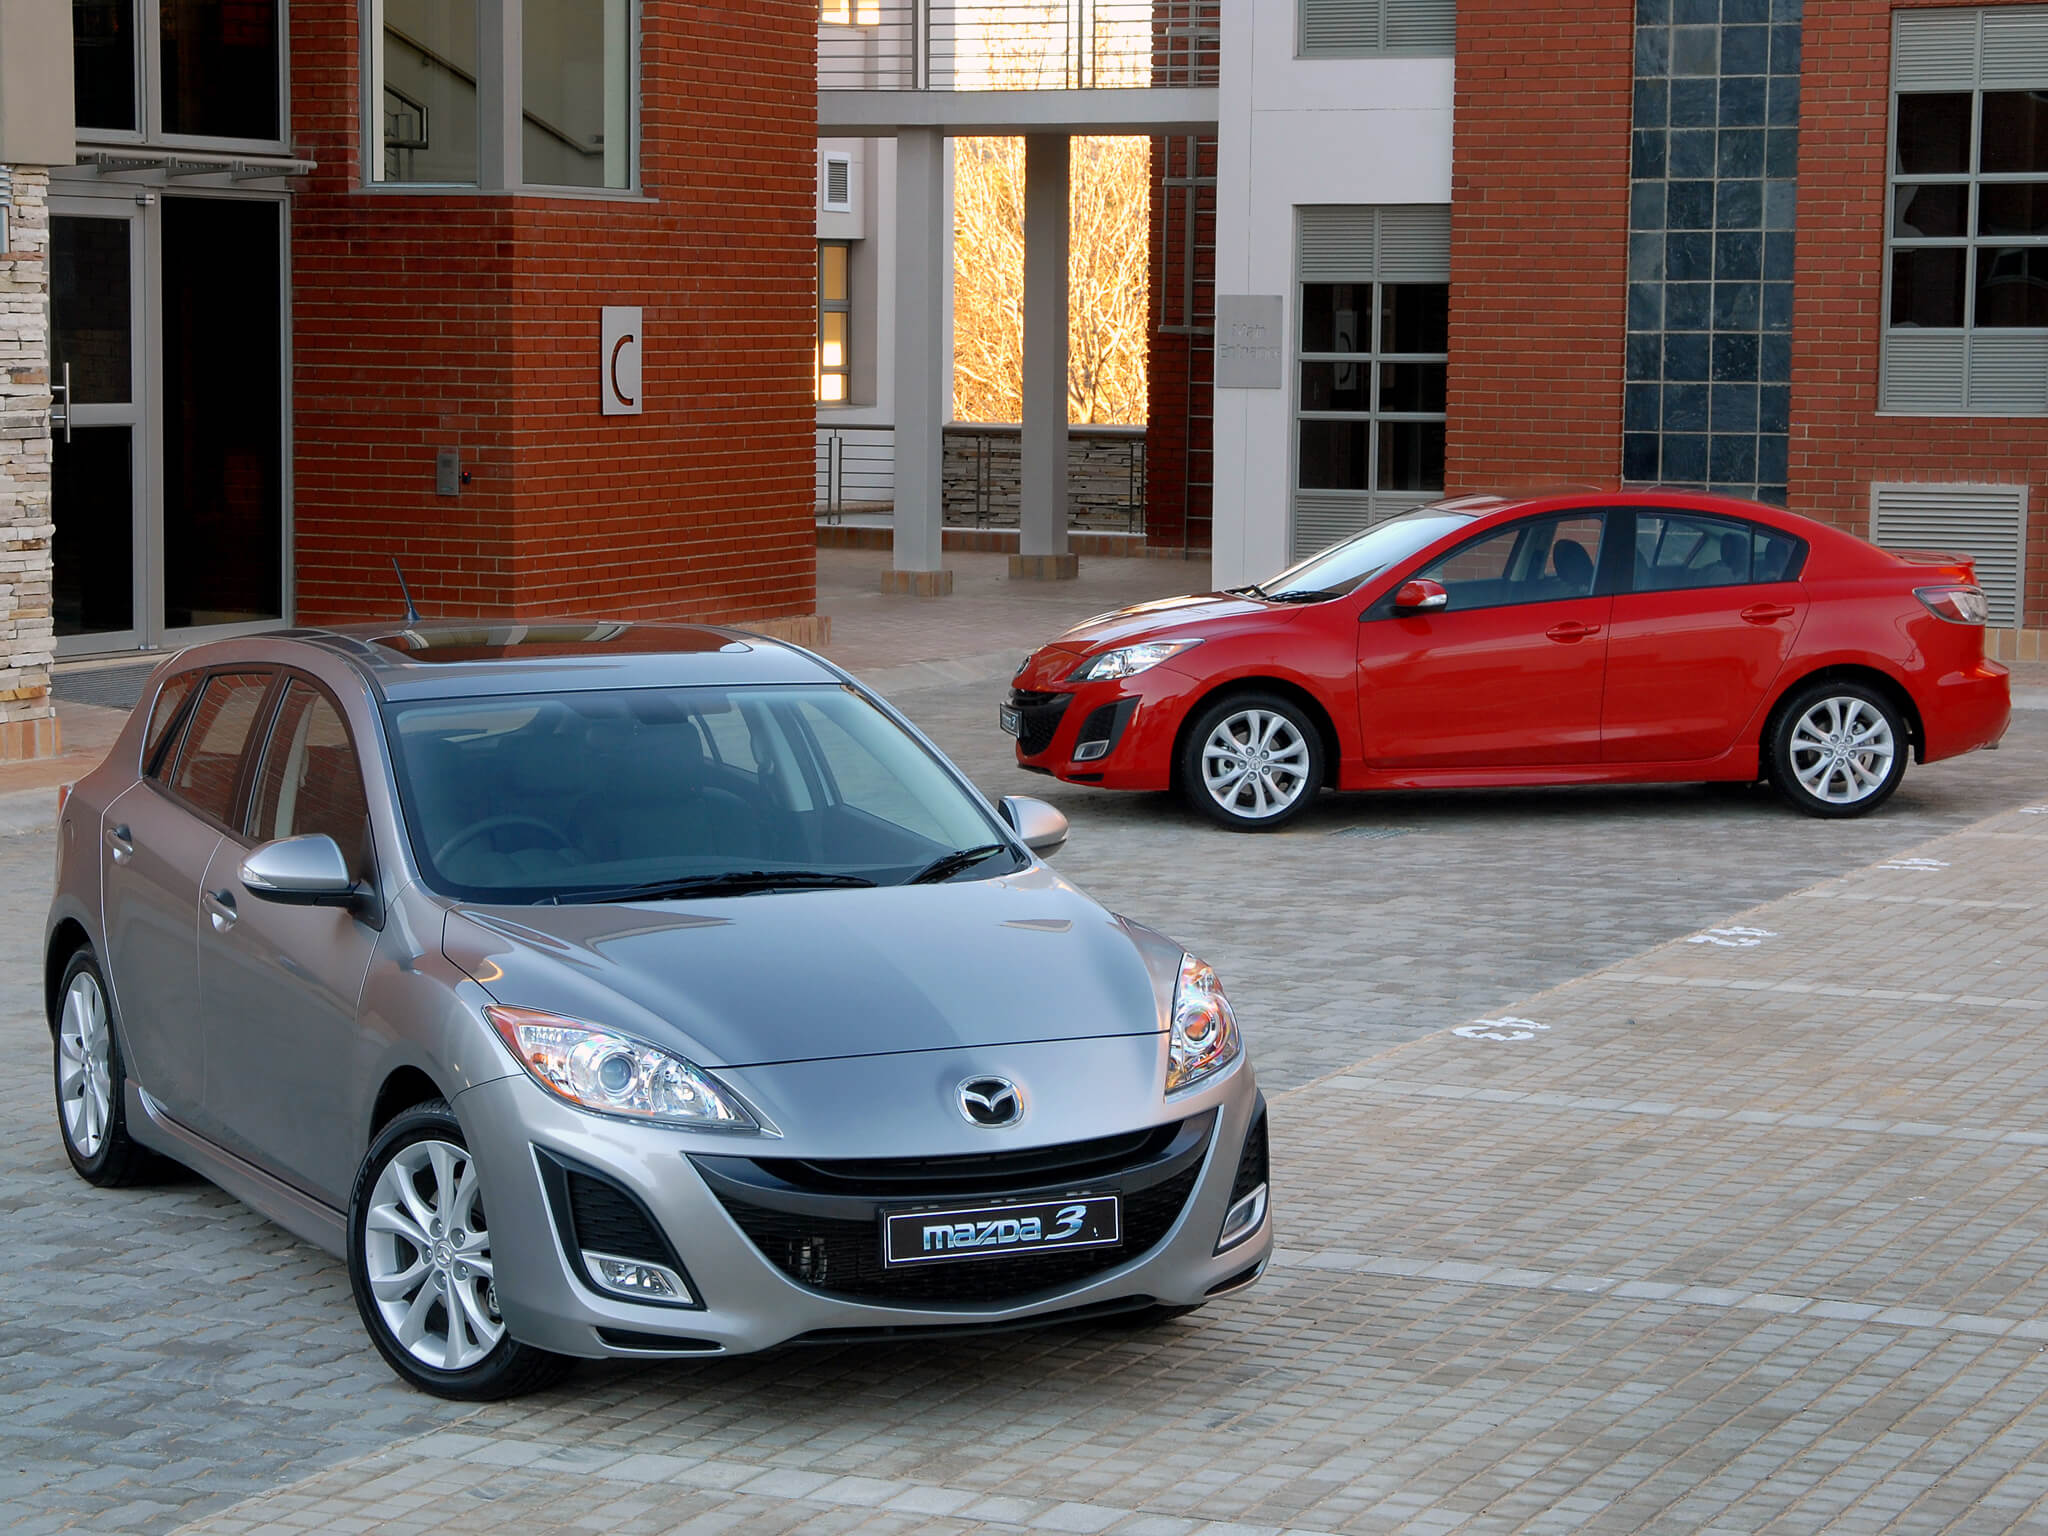 Купить за 400 тысяч. Mazda 3 BL. Mazda 3 BL 2009. Мазда 3 второе поколение. Мазда 3 2 поколение седан.